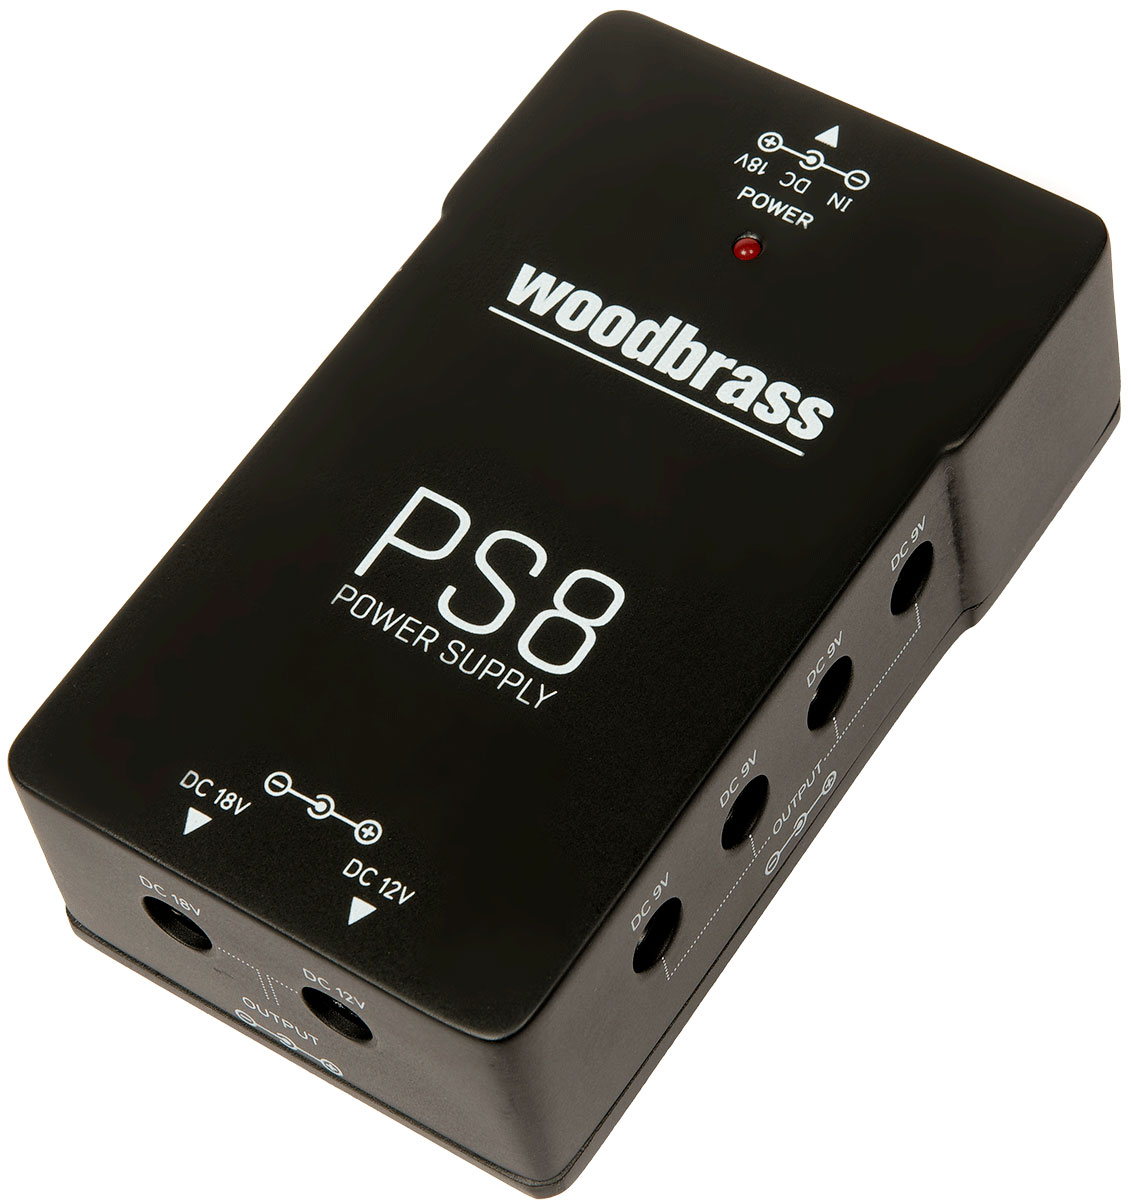 WOODBRASS PS8 POWER SUPPLY 10 PEDALES 9V 12V 18V